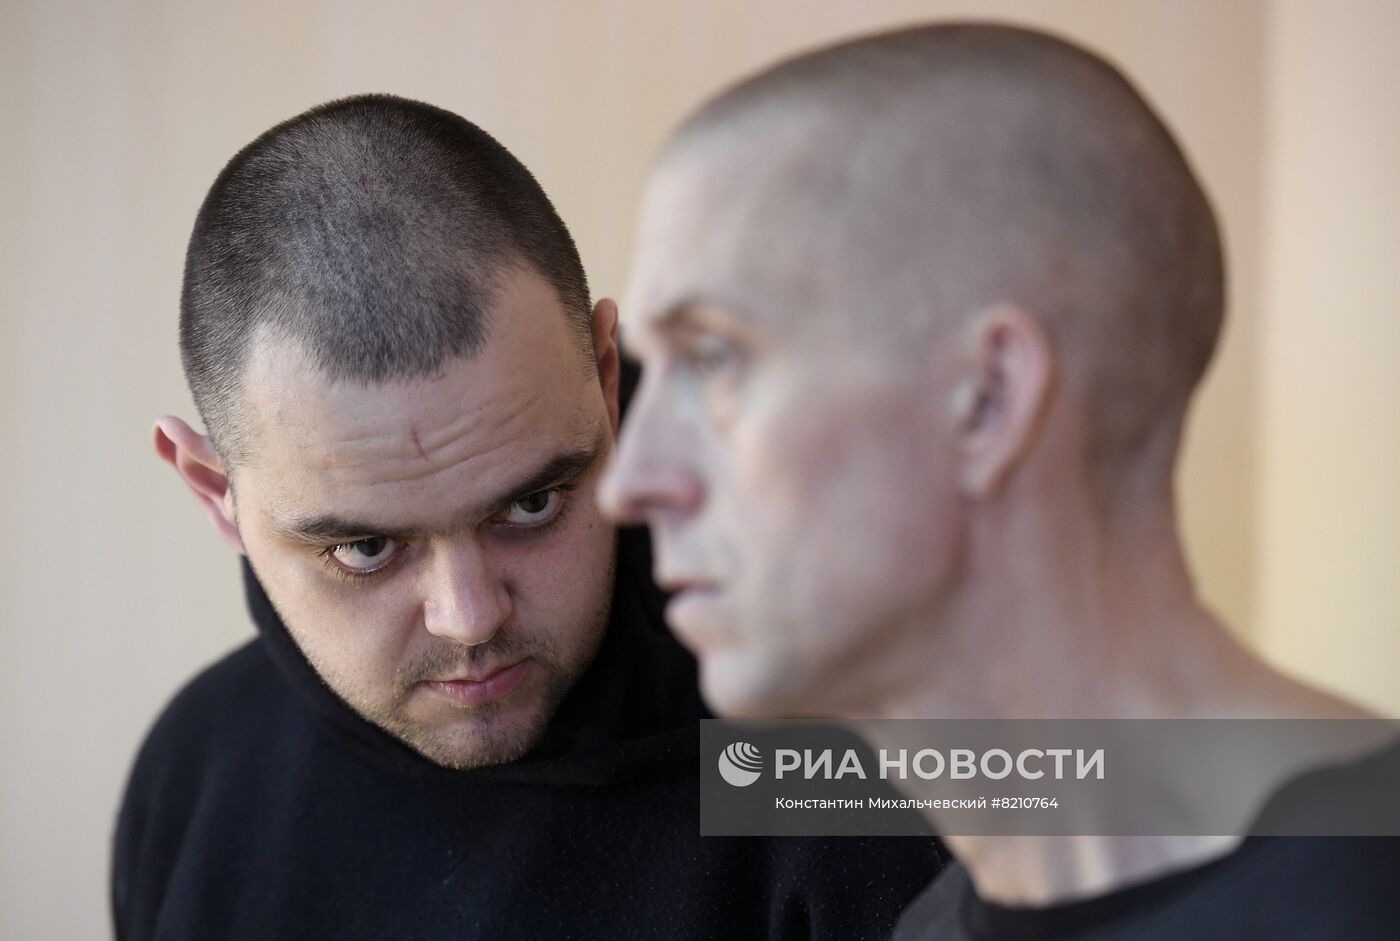 Суд над иностранными наемниками в ДНР